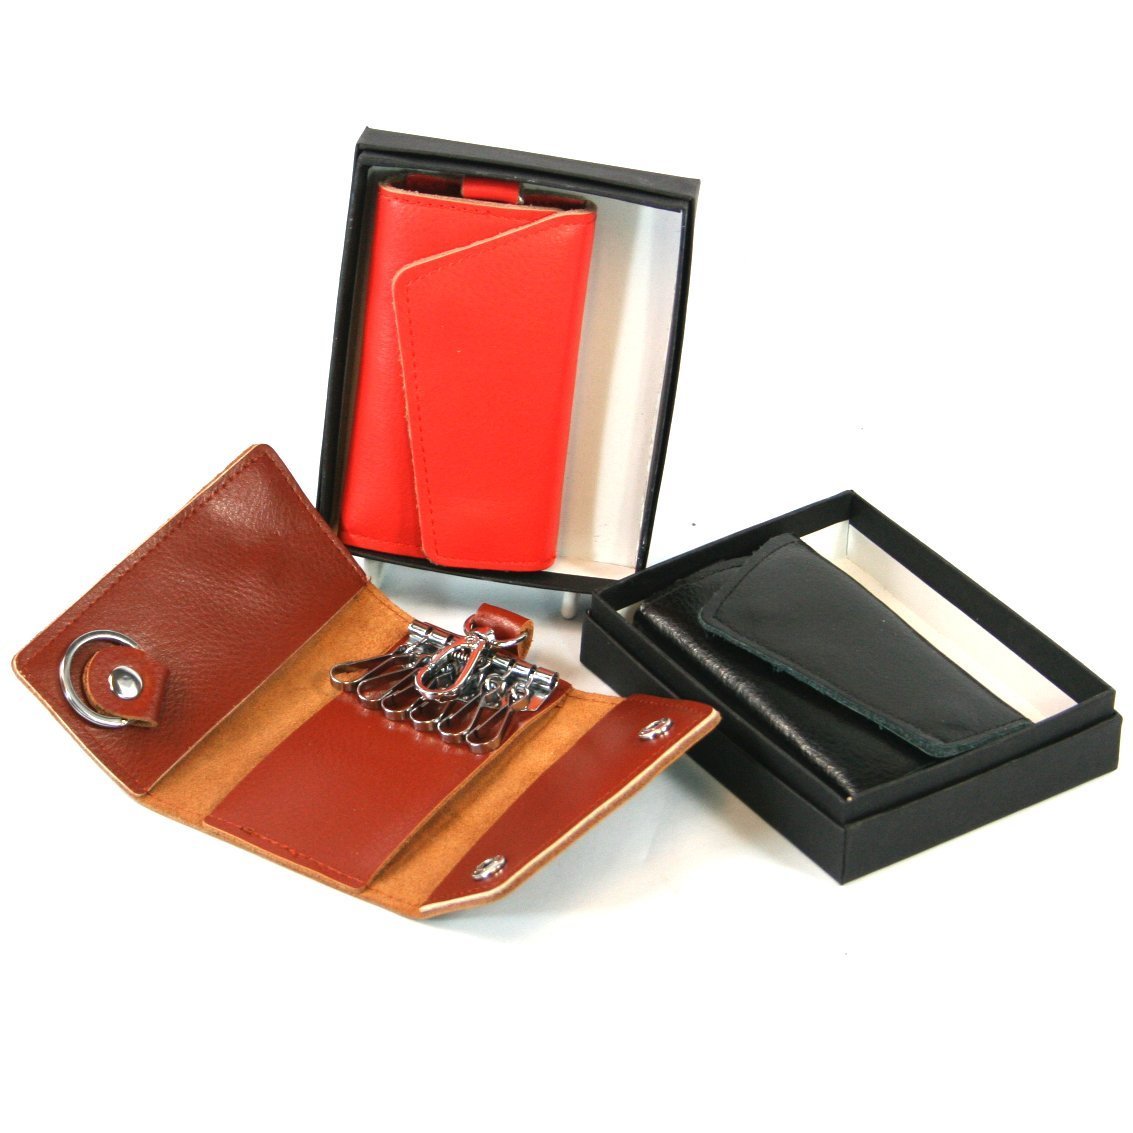 Primary image for Leather Key Case Keyring Key Holder Orange, Black or Brown (Black)